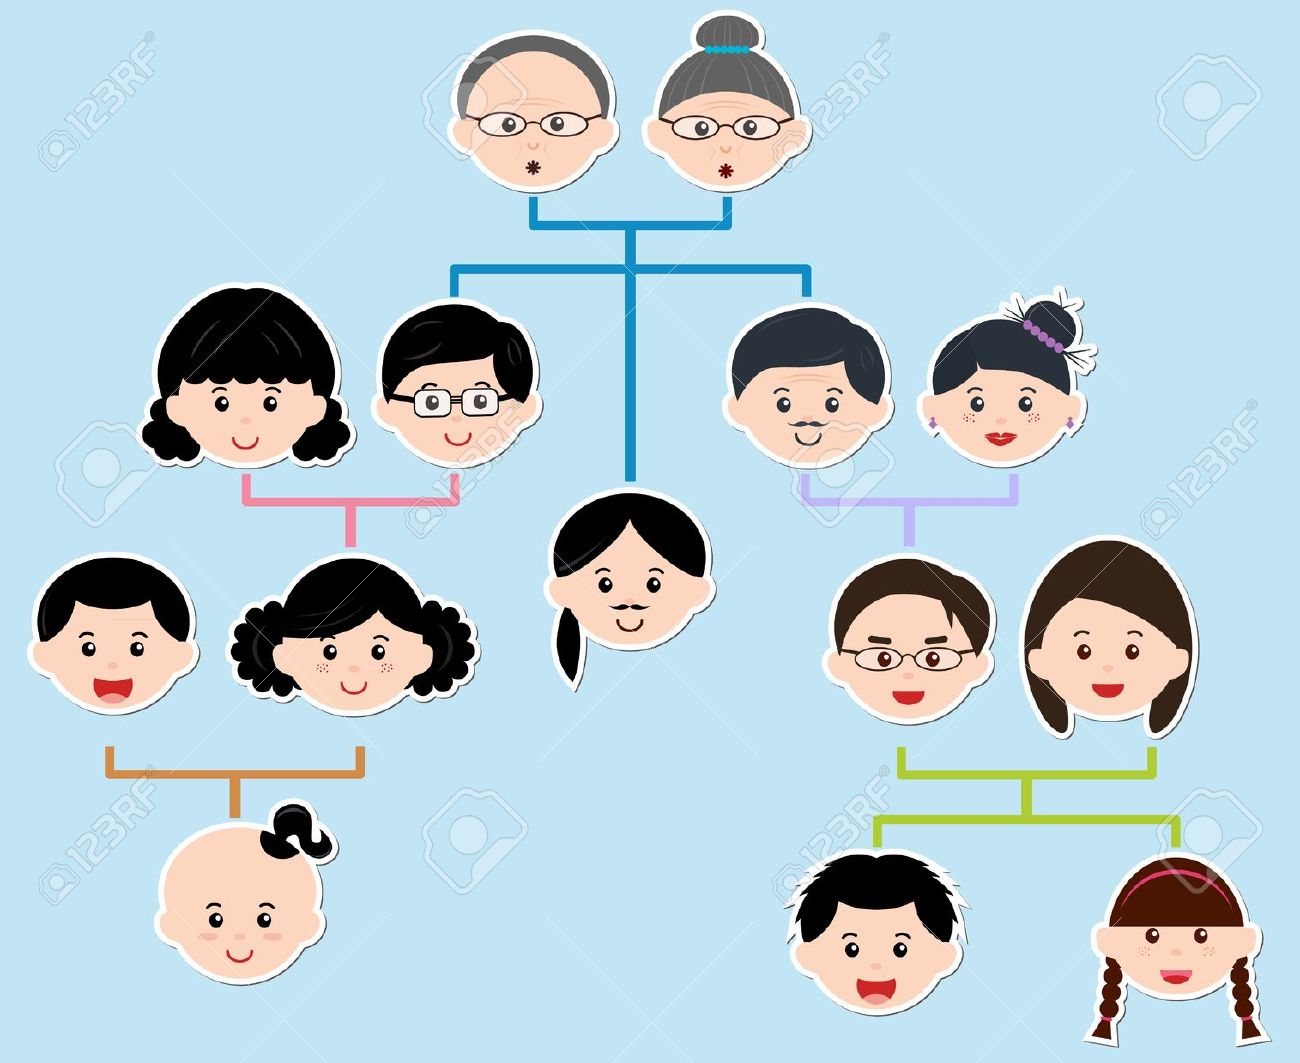 Family tree asian family history clipart